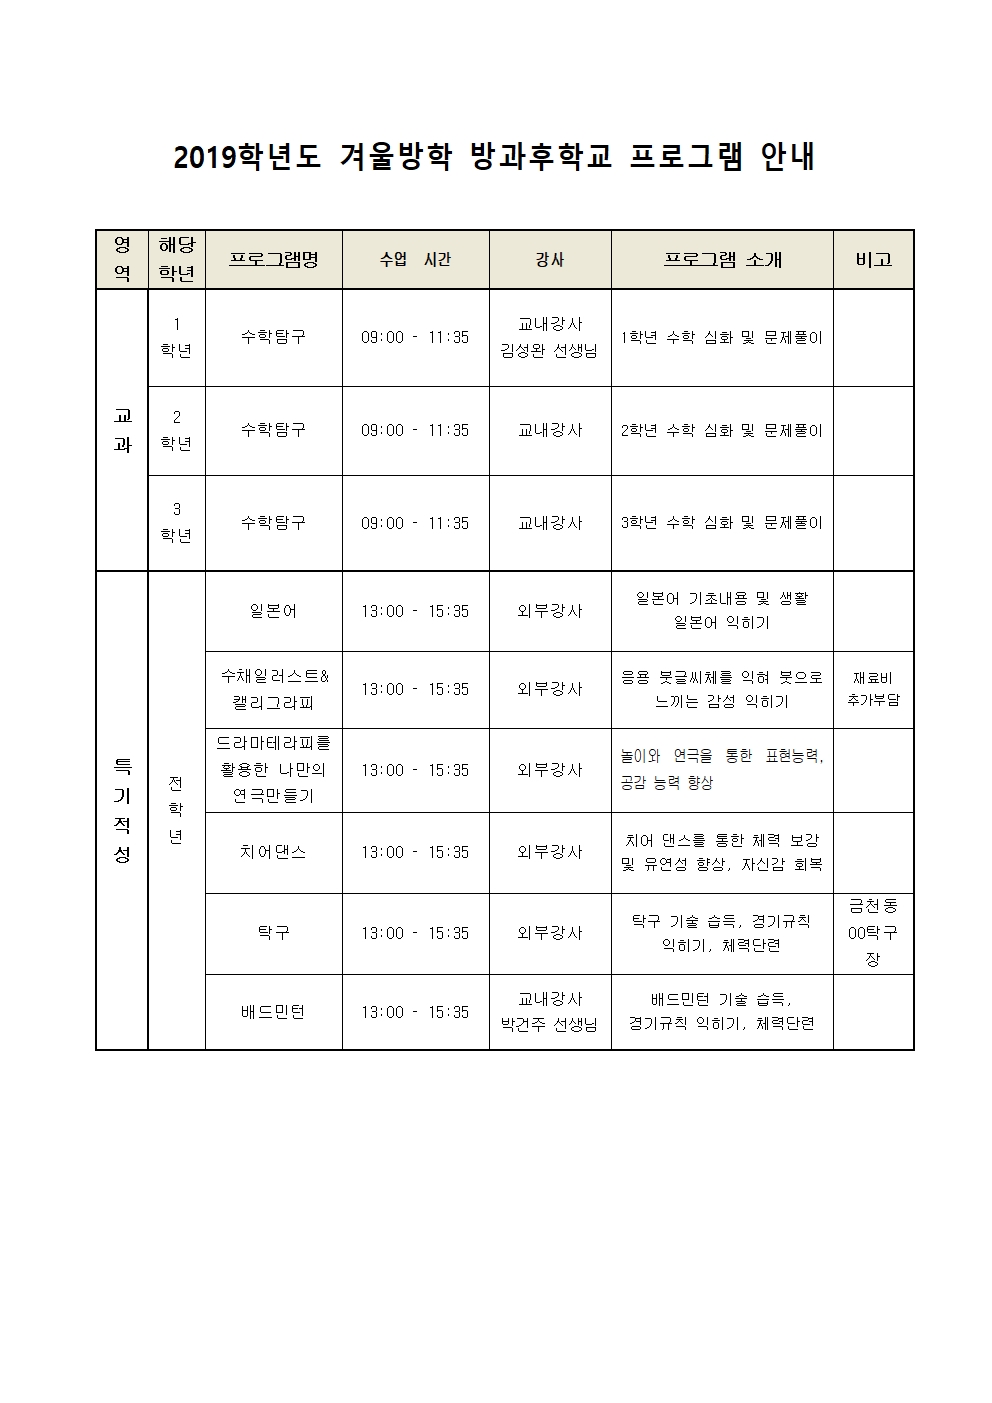 2019 겨울방학 방과후학교 수요조사 가정통신문002